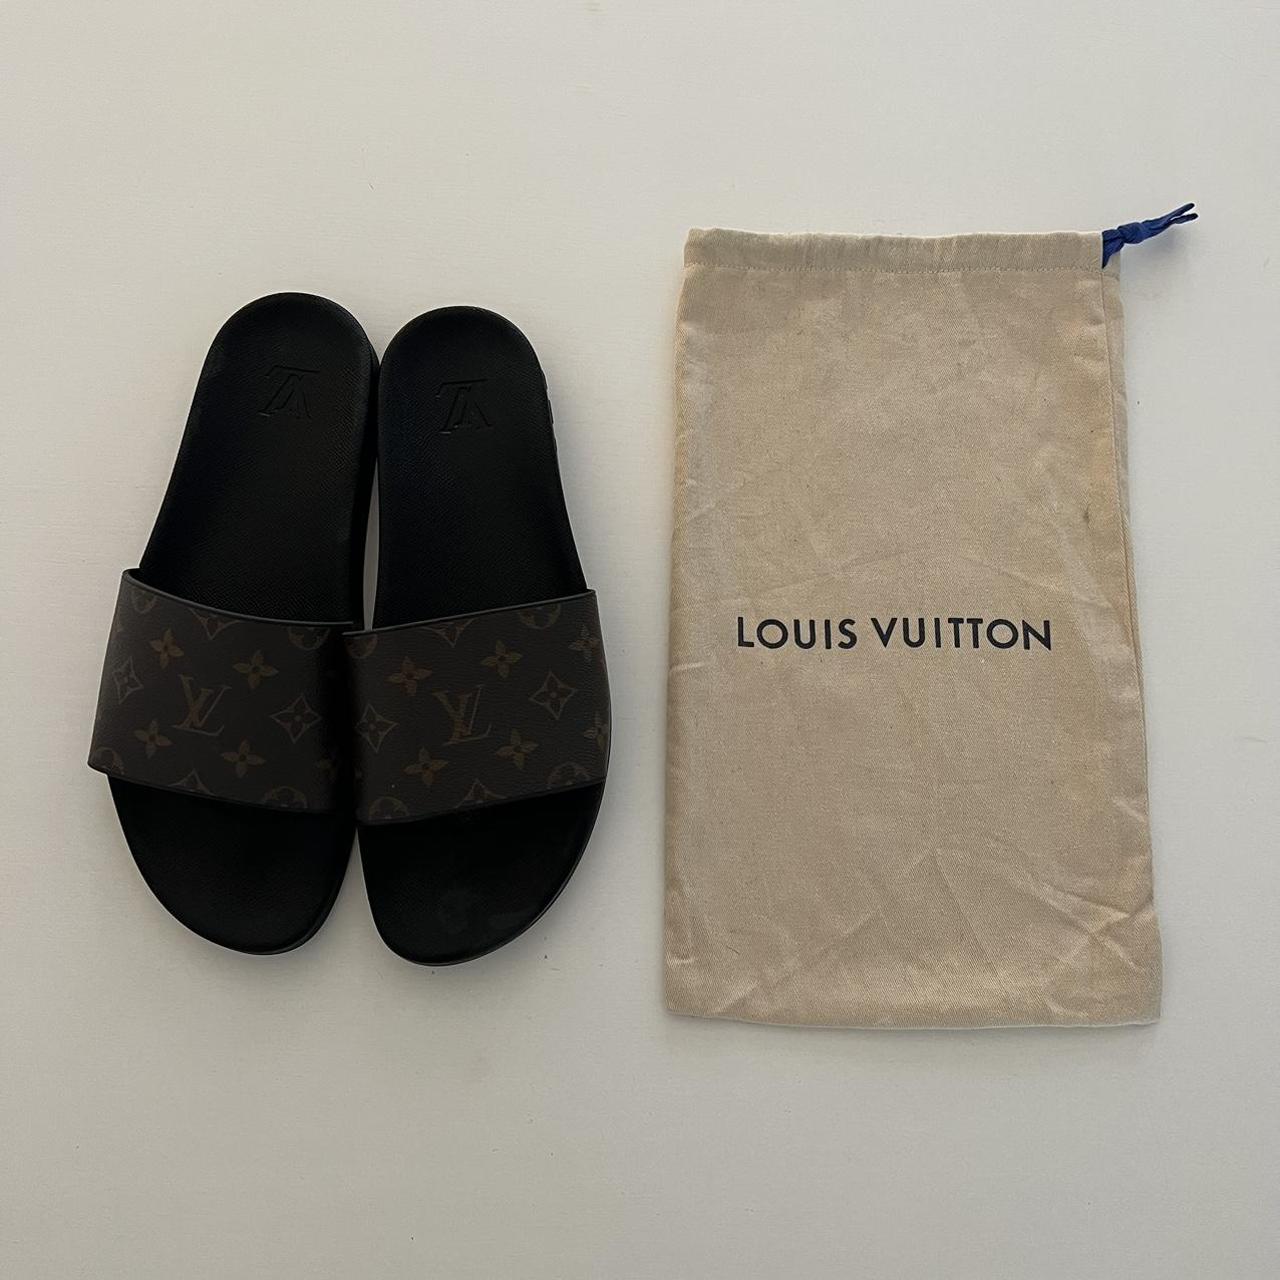 Louis Vuitton Malletier Paris 1854 Waterfront Mules Slides - Praise To  Heaven